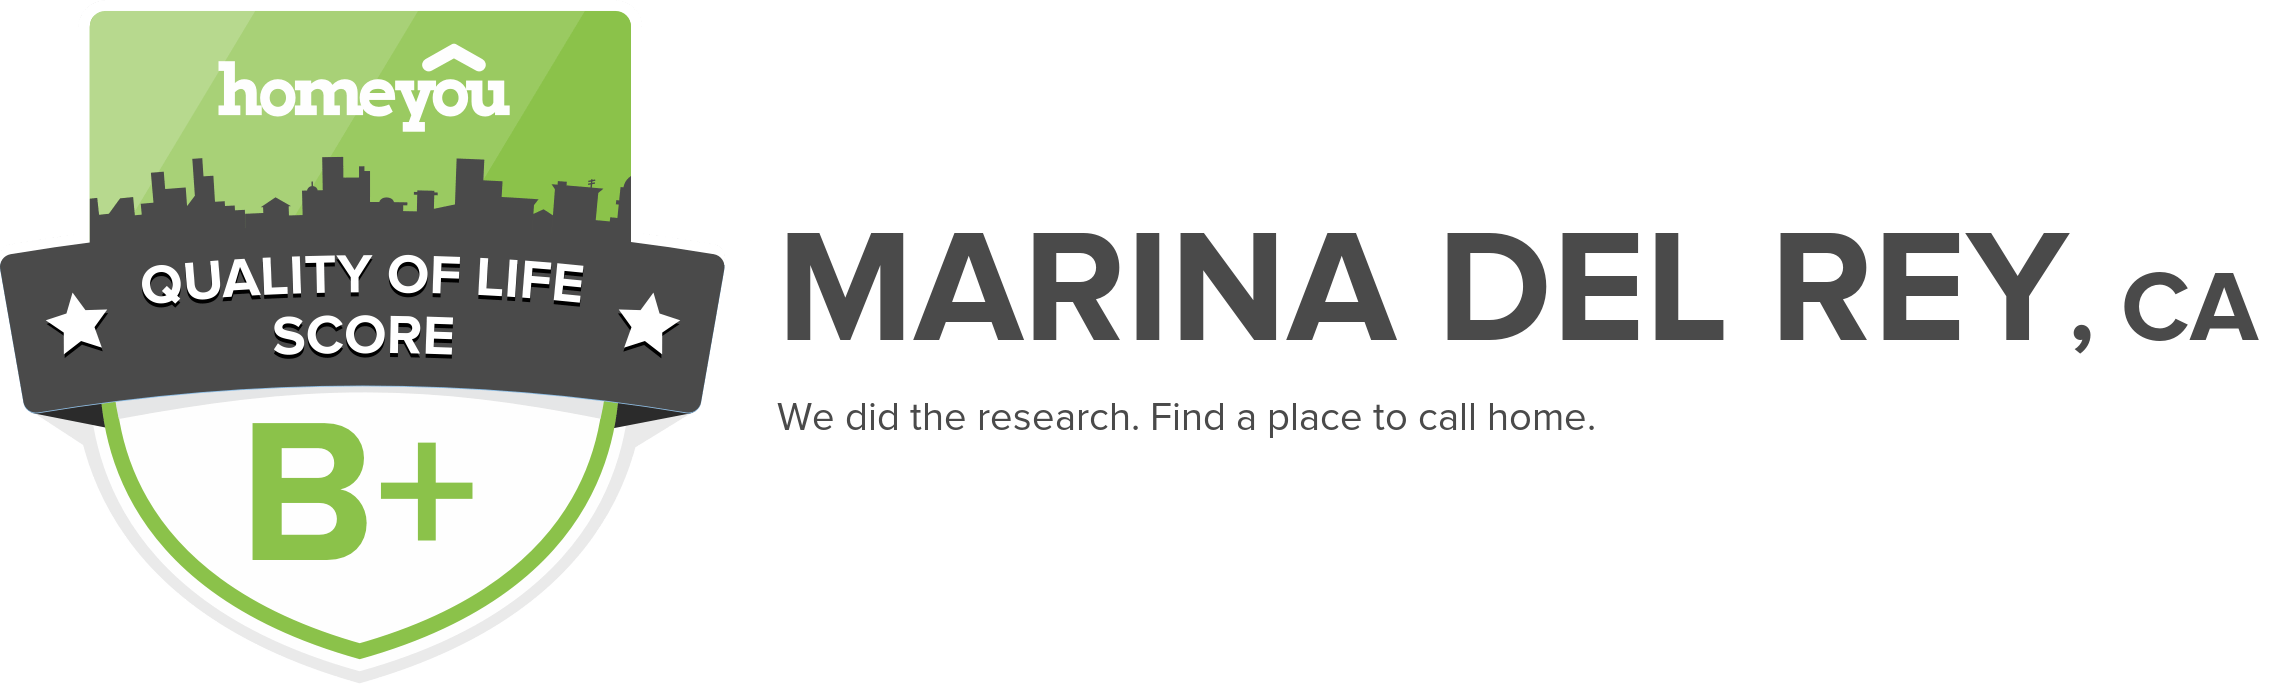 Marina del Rey, CA